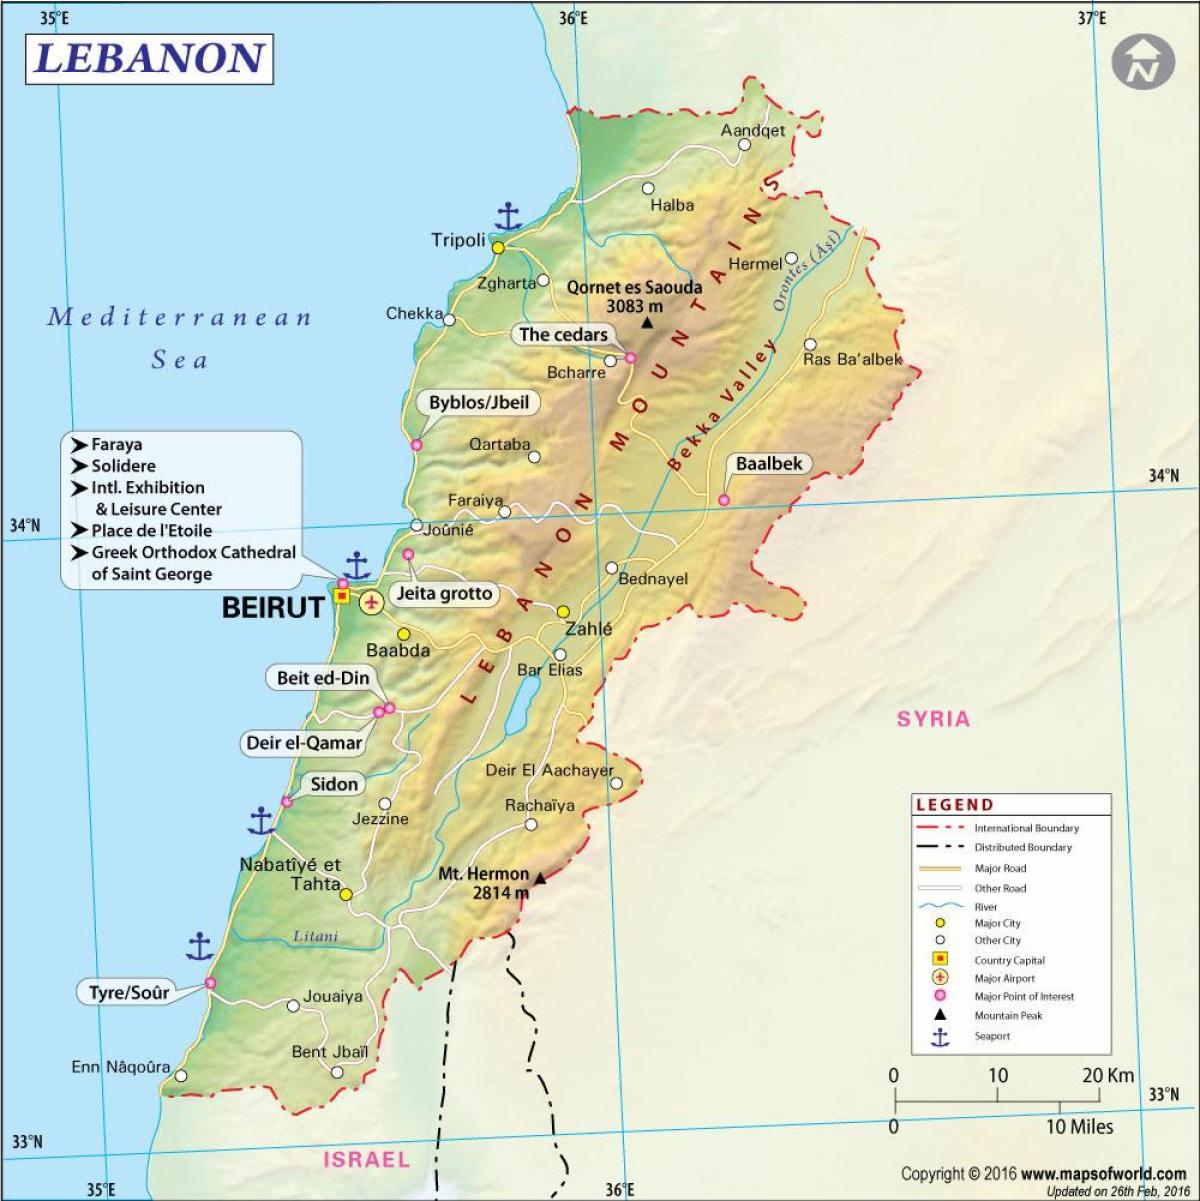 karta drevnog Libanona